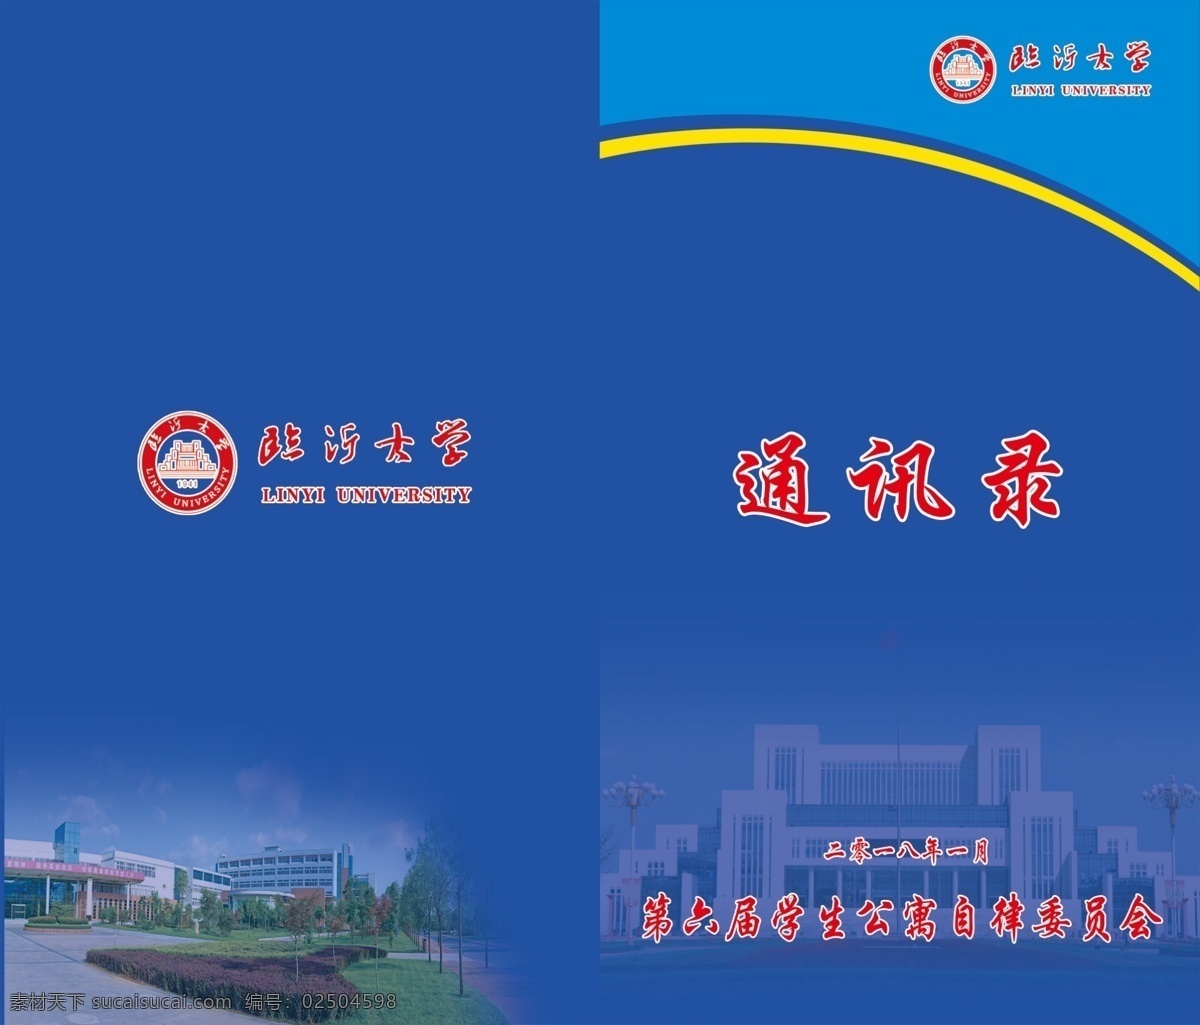 北京大学 通讯录 怀念 蓝色背景 青春 校园